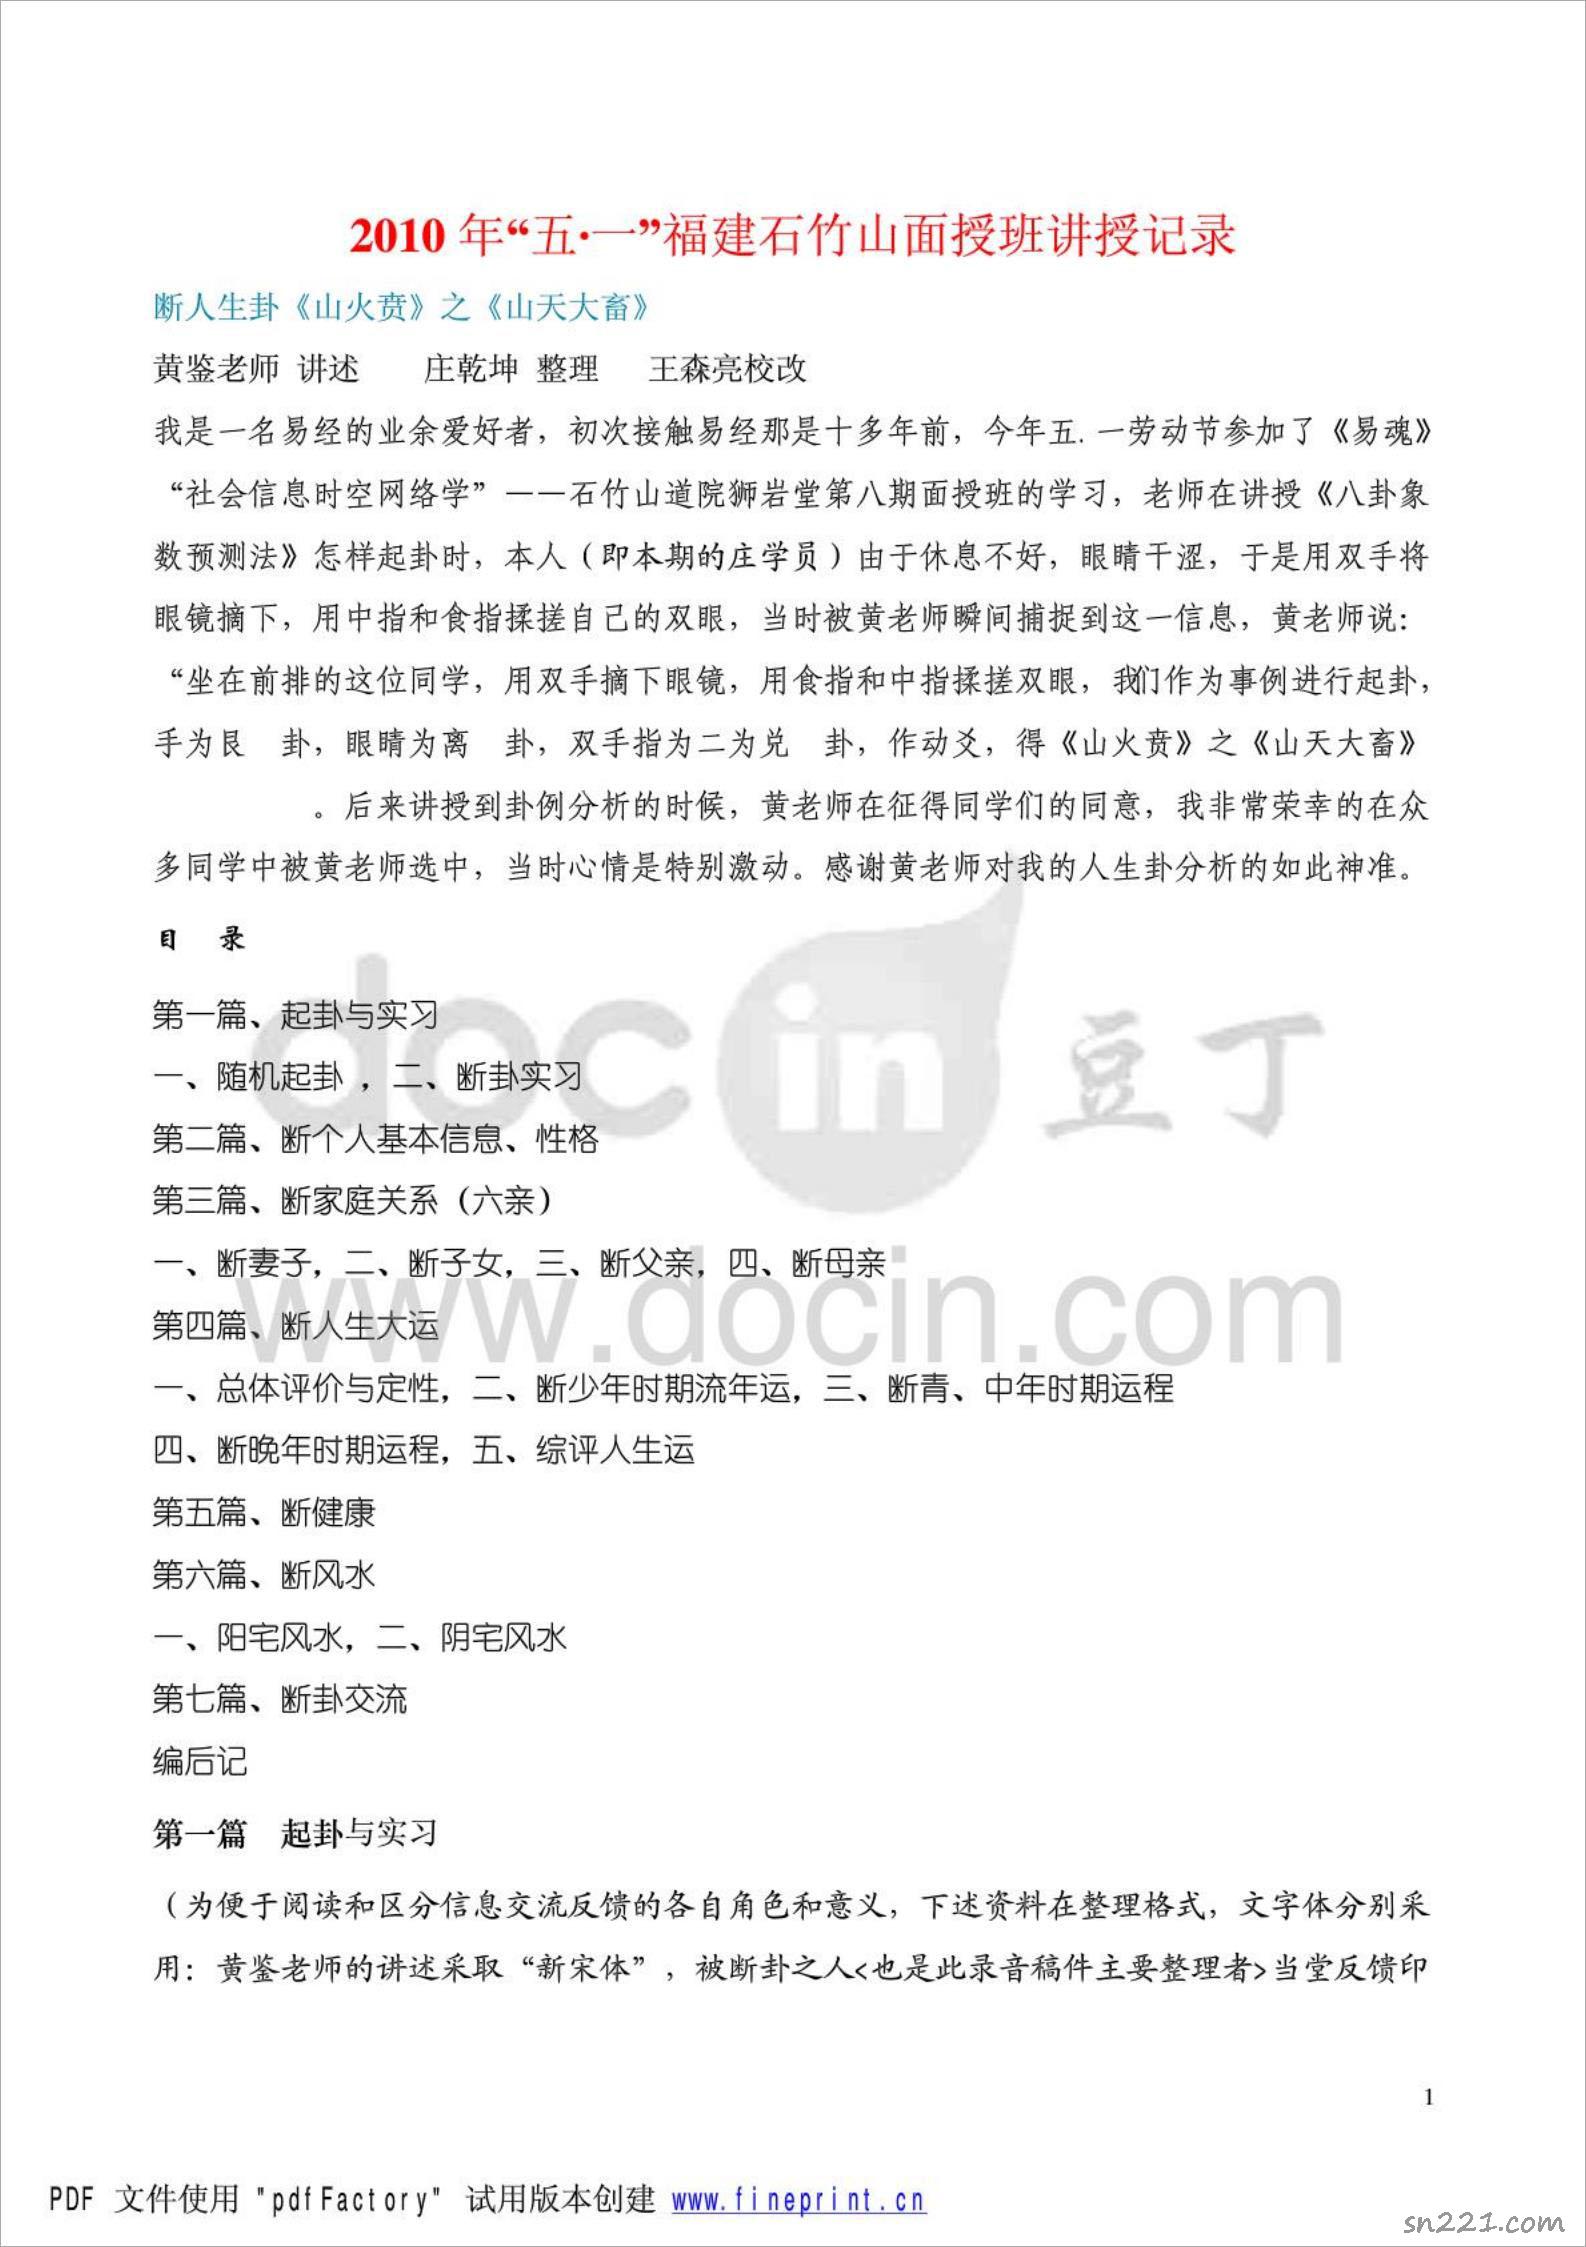 黃鑒-2010年“五一”福建石竹山梅花心易面授班講義47頁.pdf